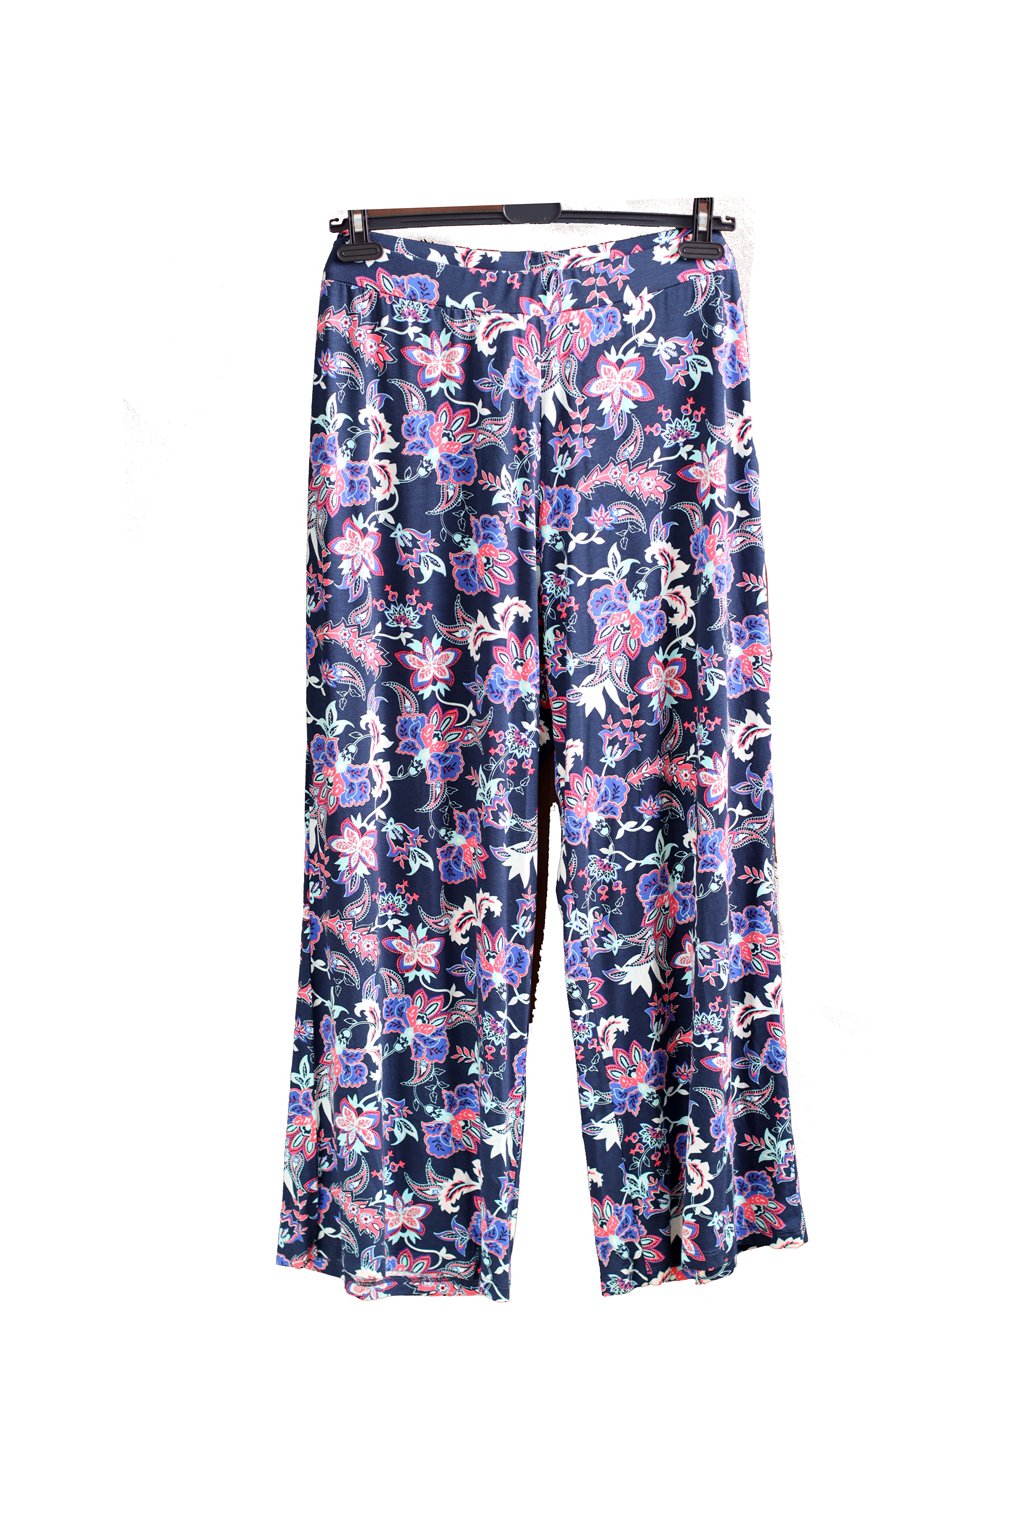 Dámské modro-růžovo-zeleno-bílé vzorované lehké kalhoty / George / XXXXL (52) / ANGLIE